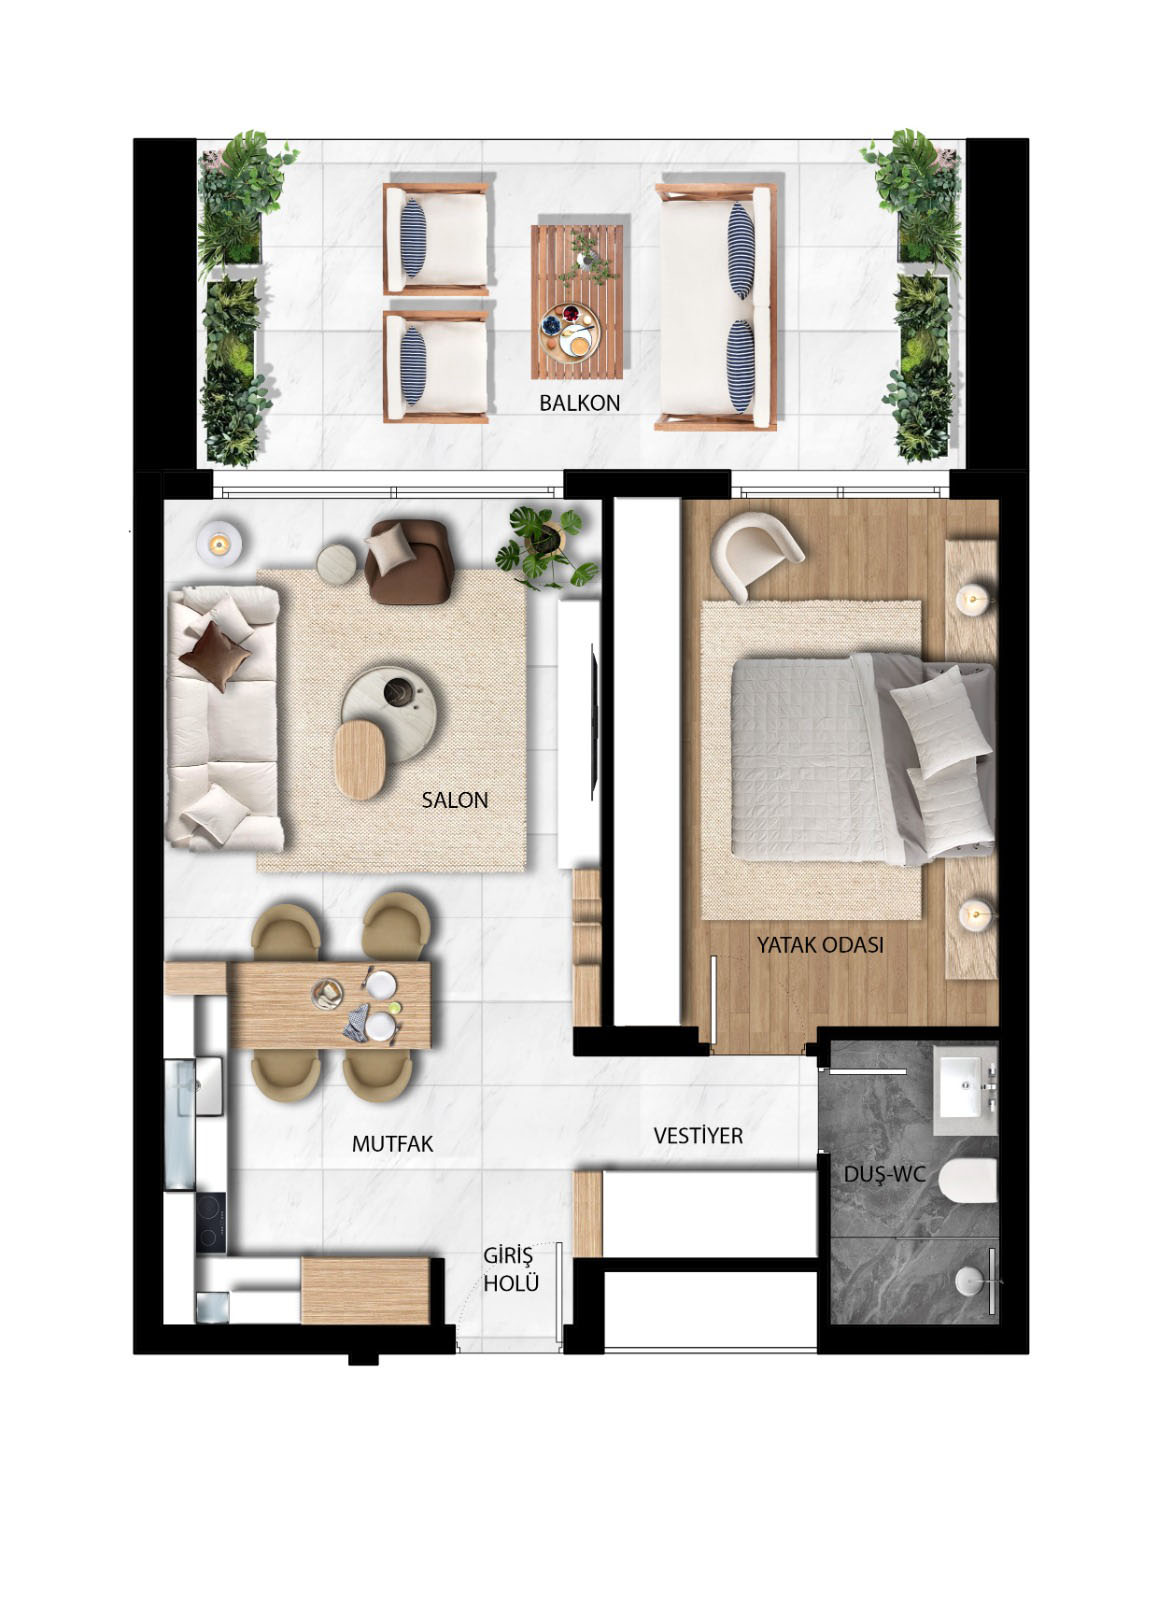 Planritning - Lägenhet i markplan med ett sovrum